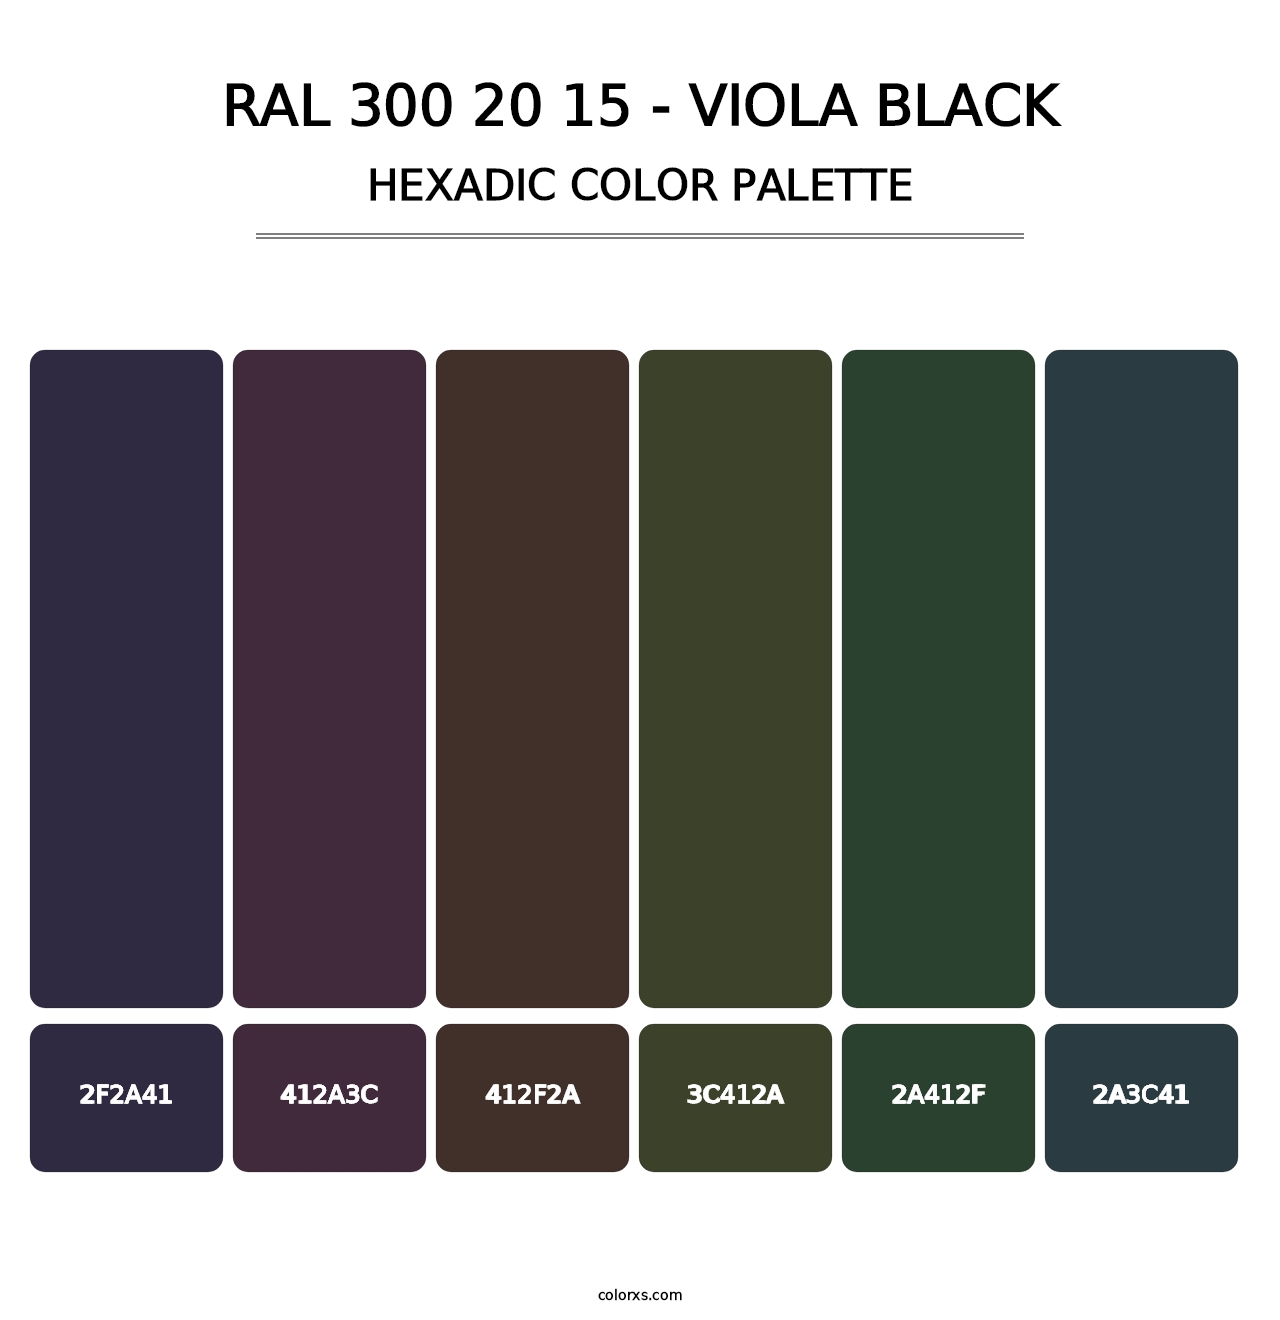 RAL 300 20 15 - Viola Black - Hexadic Color Palette